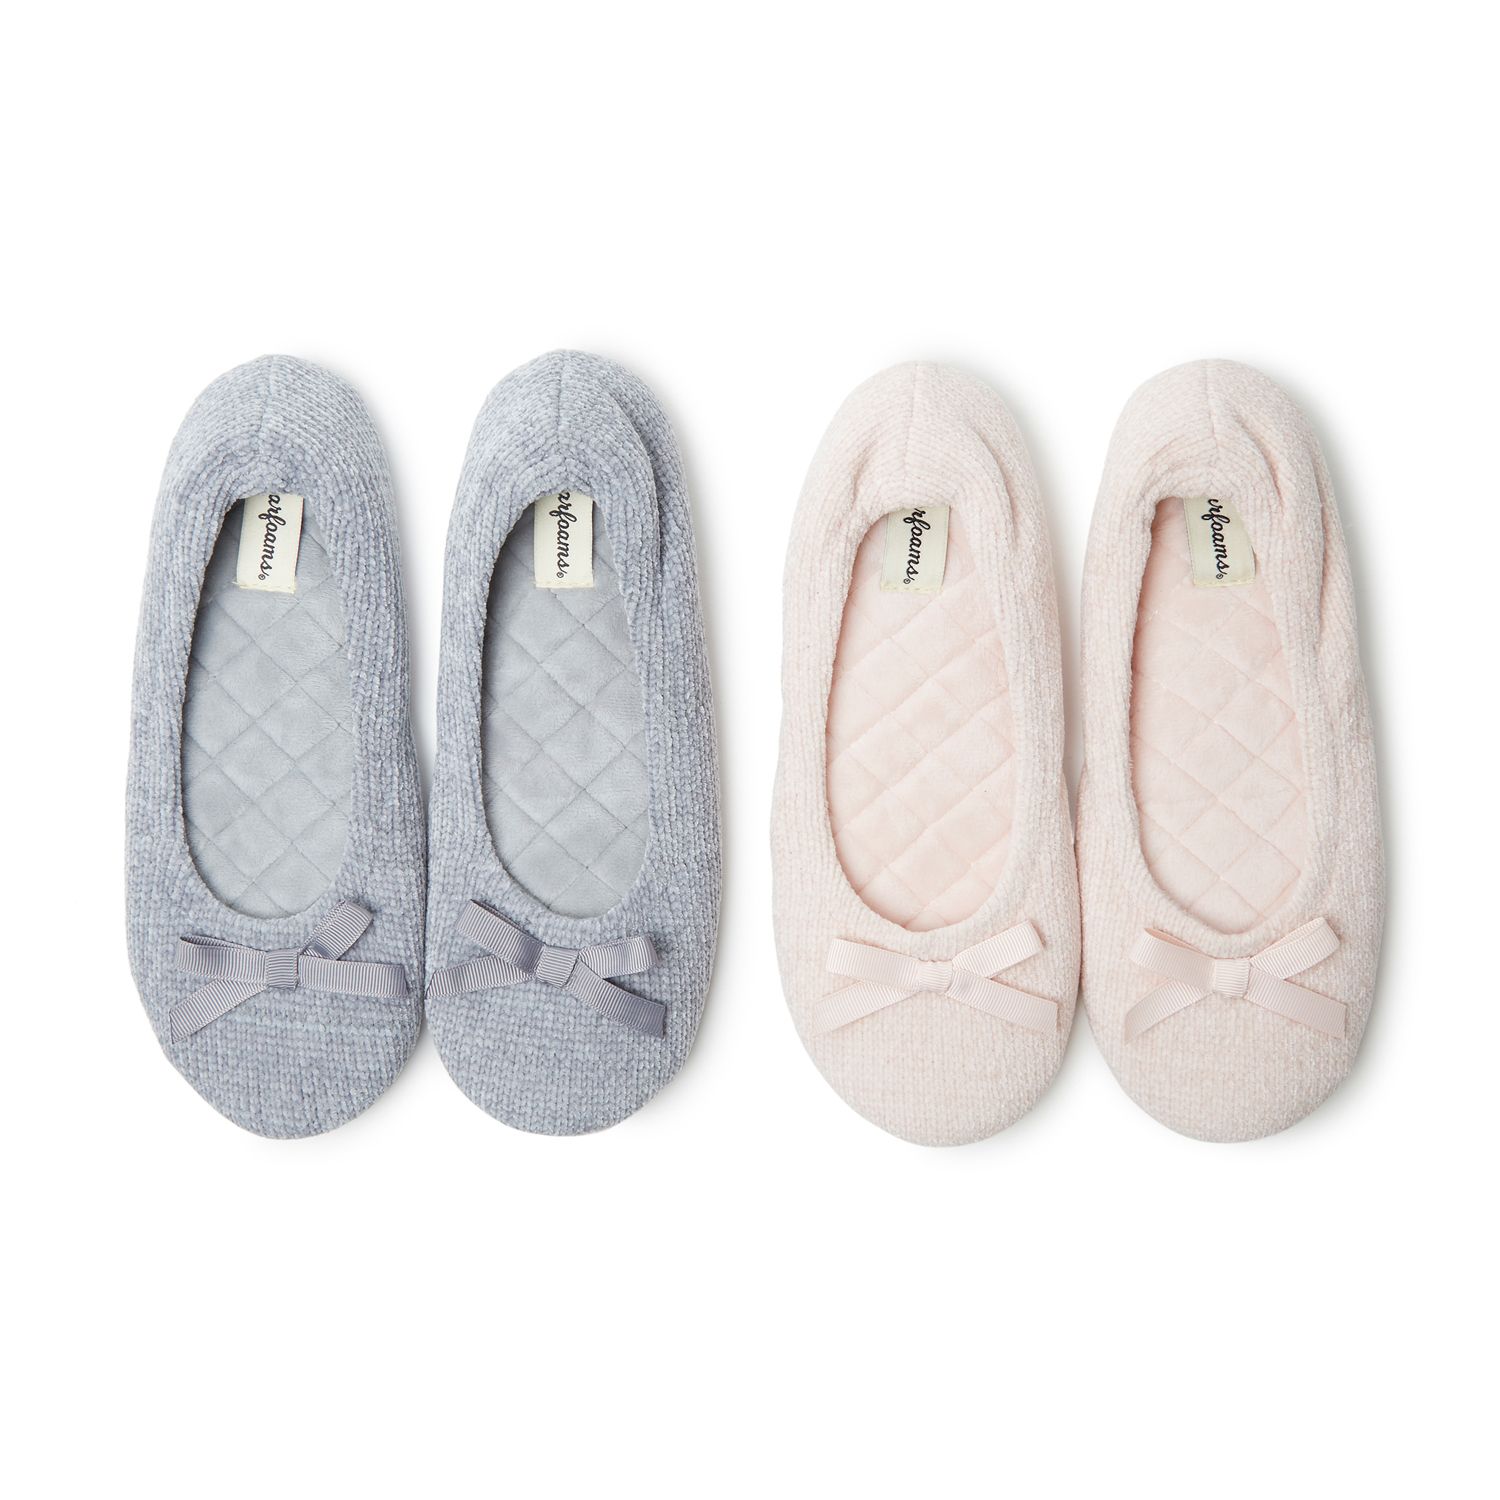 dearfoams ballerina memory foam slippers